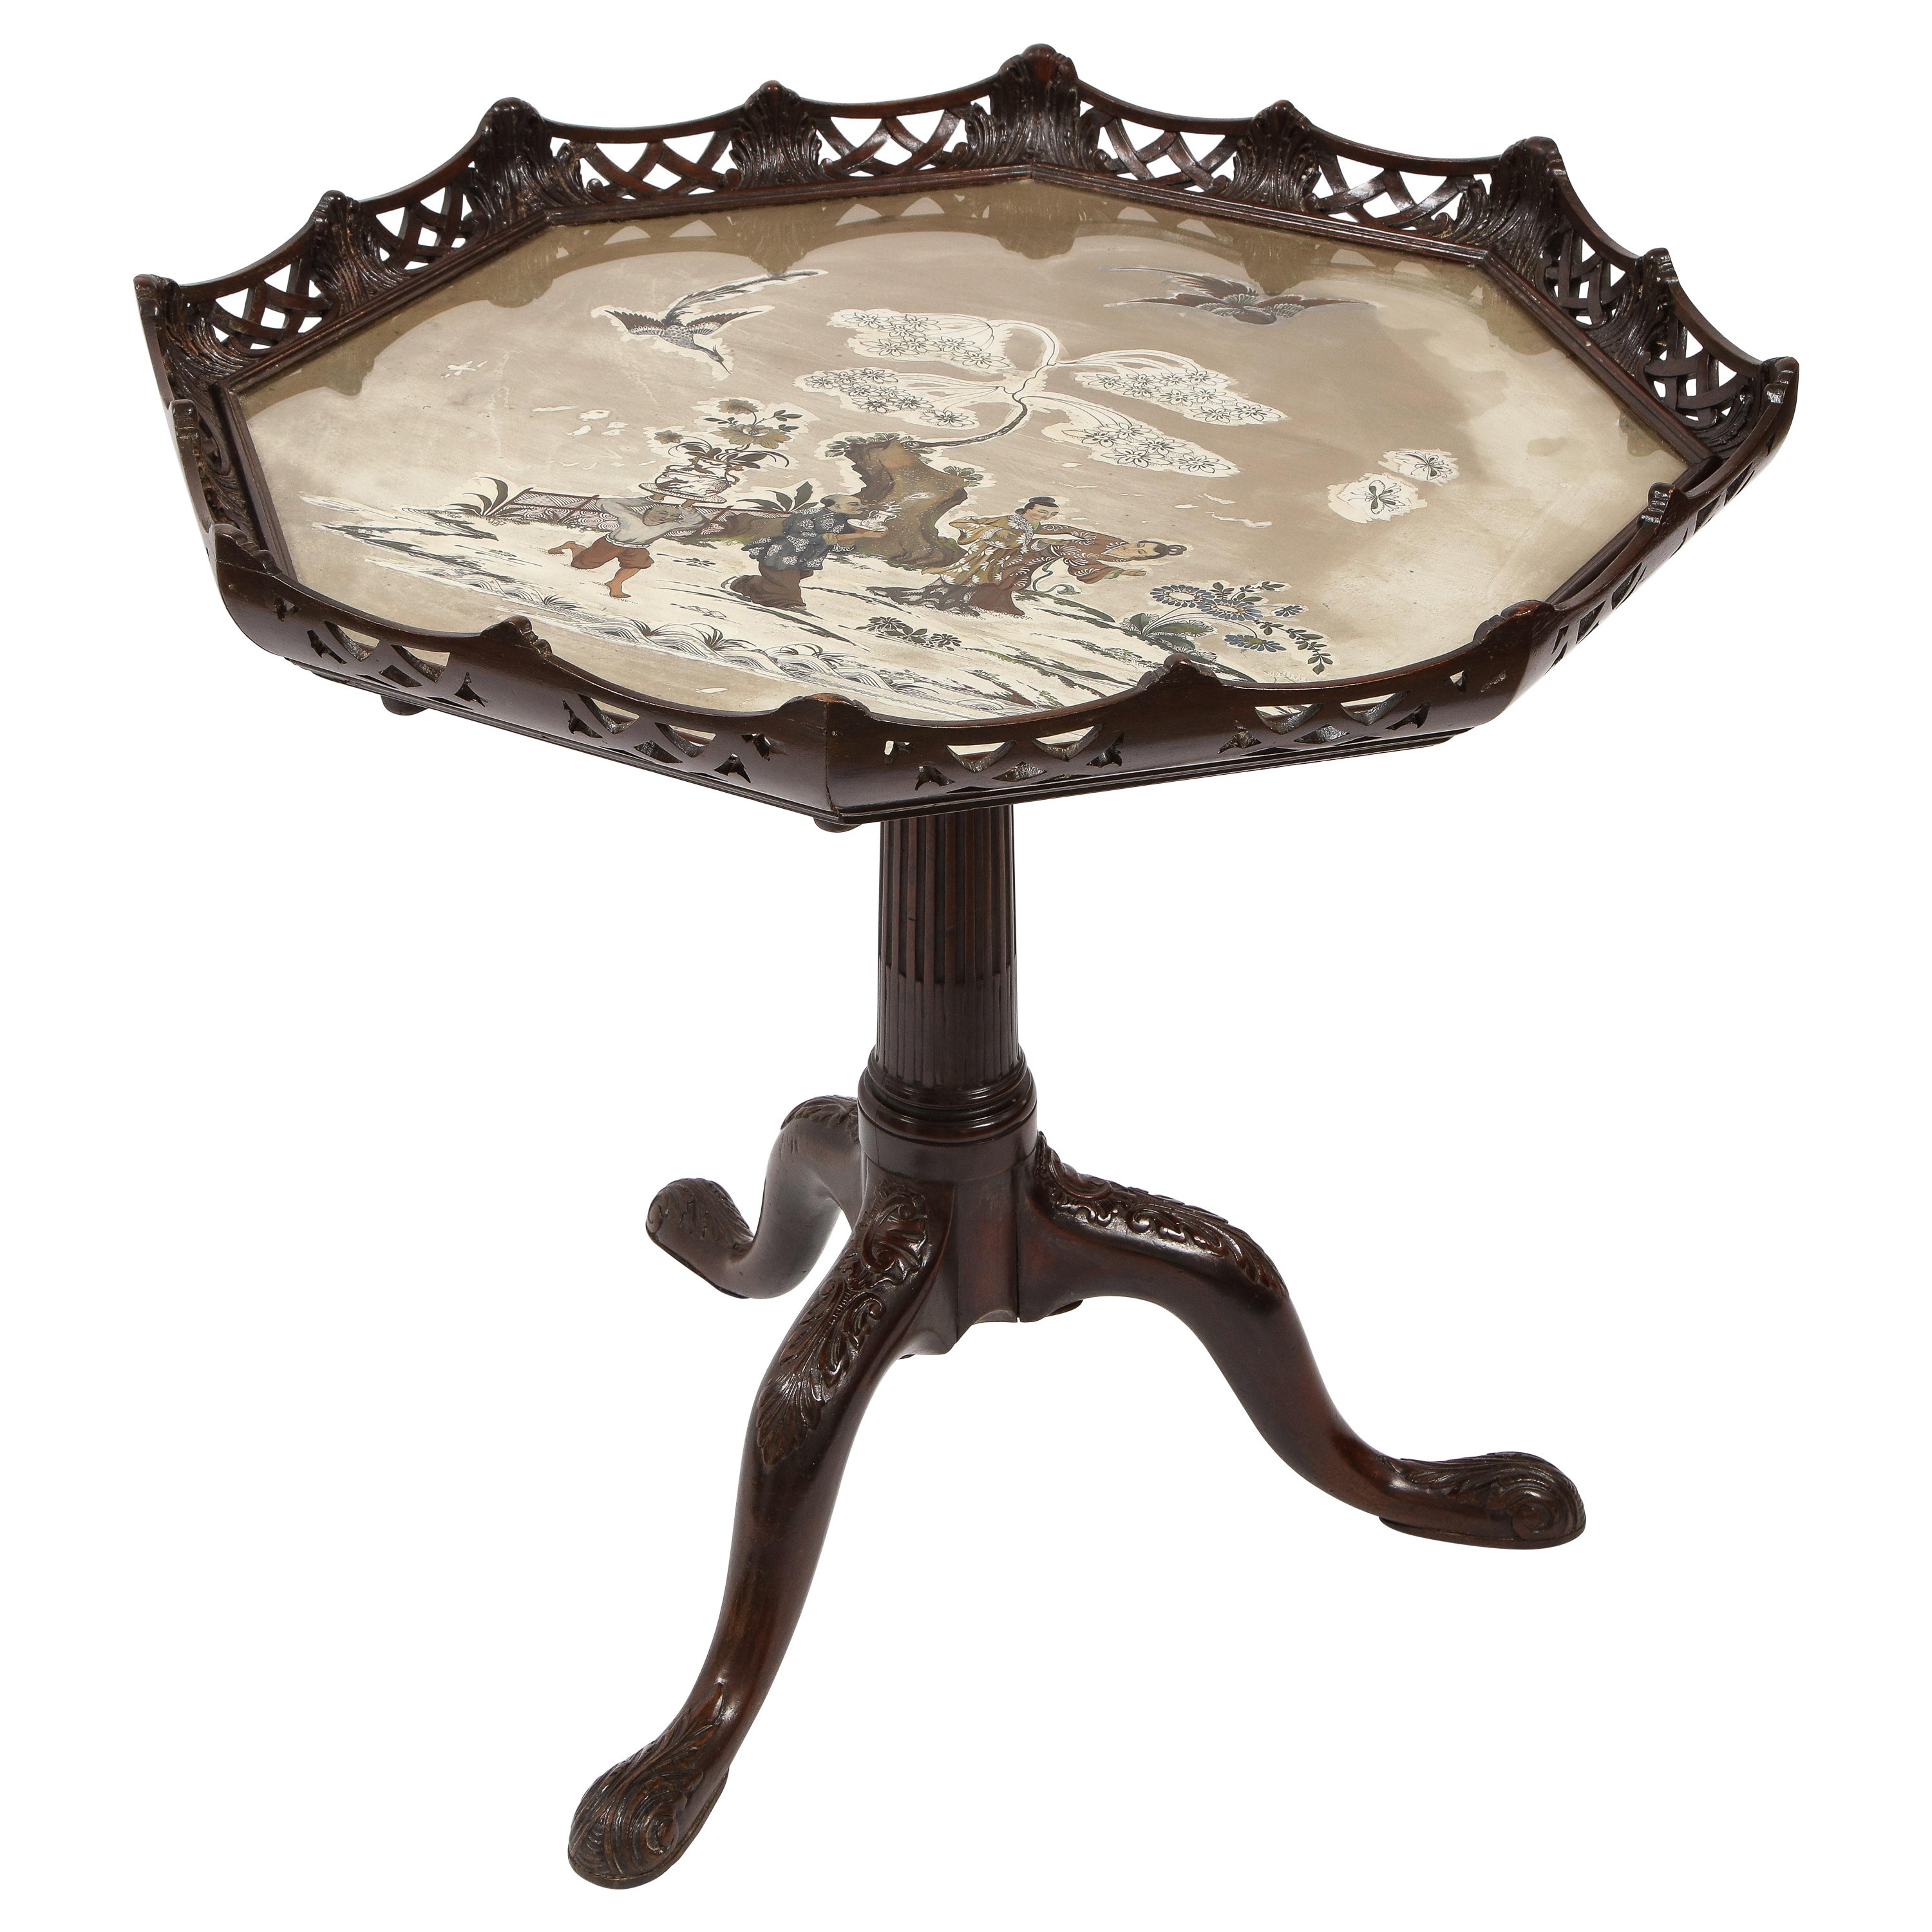 Table octogonale anglaise du 19ème siècle à plateau basculant et chinoiseries inversées sur plateau en verre